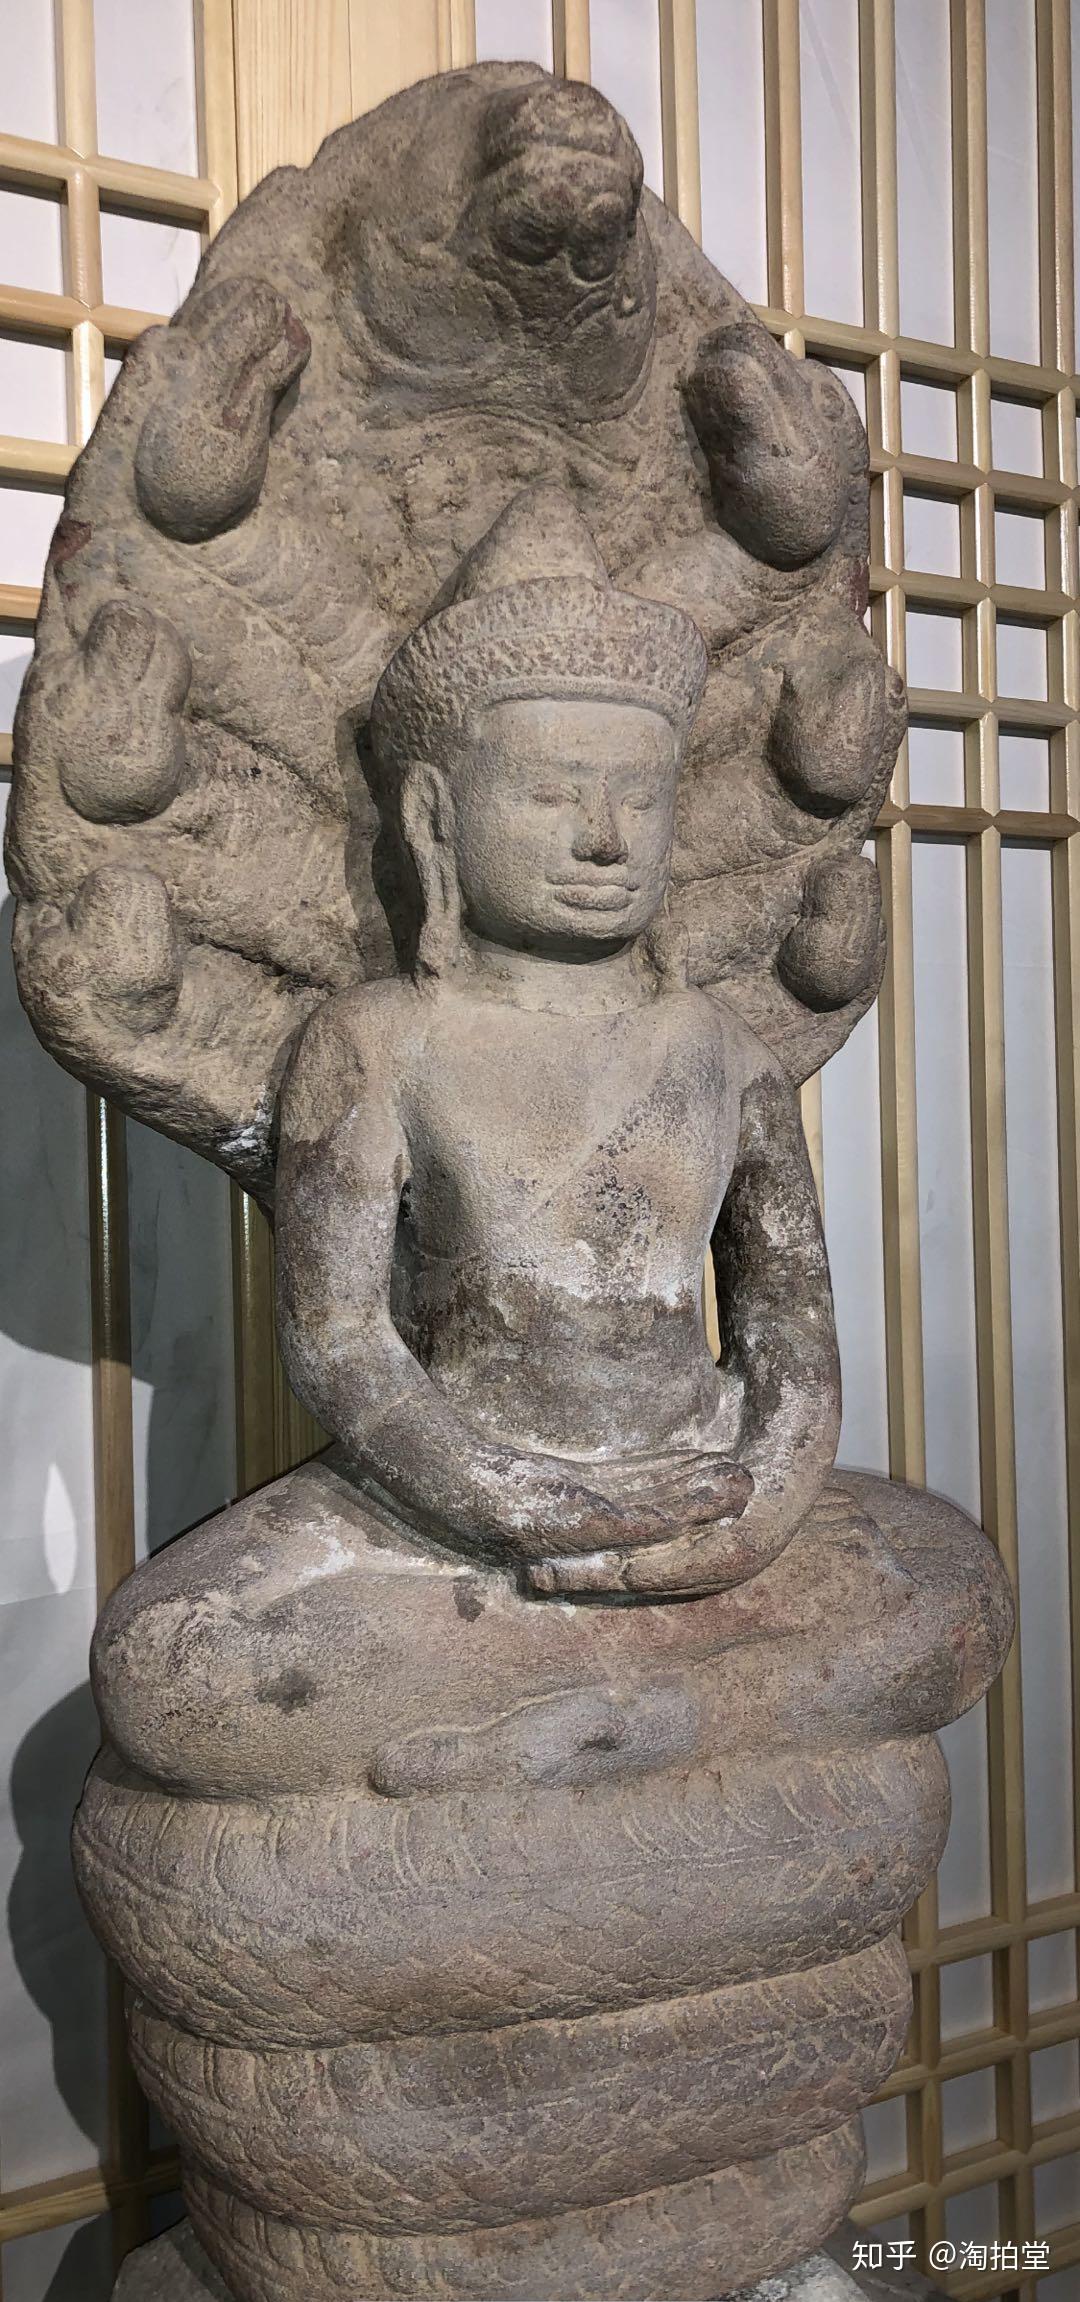 淘拍堂的"国宝级珍藏"——七至十世纪蛇王纳迦护佛像 - 知乎